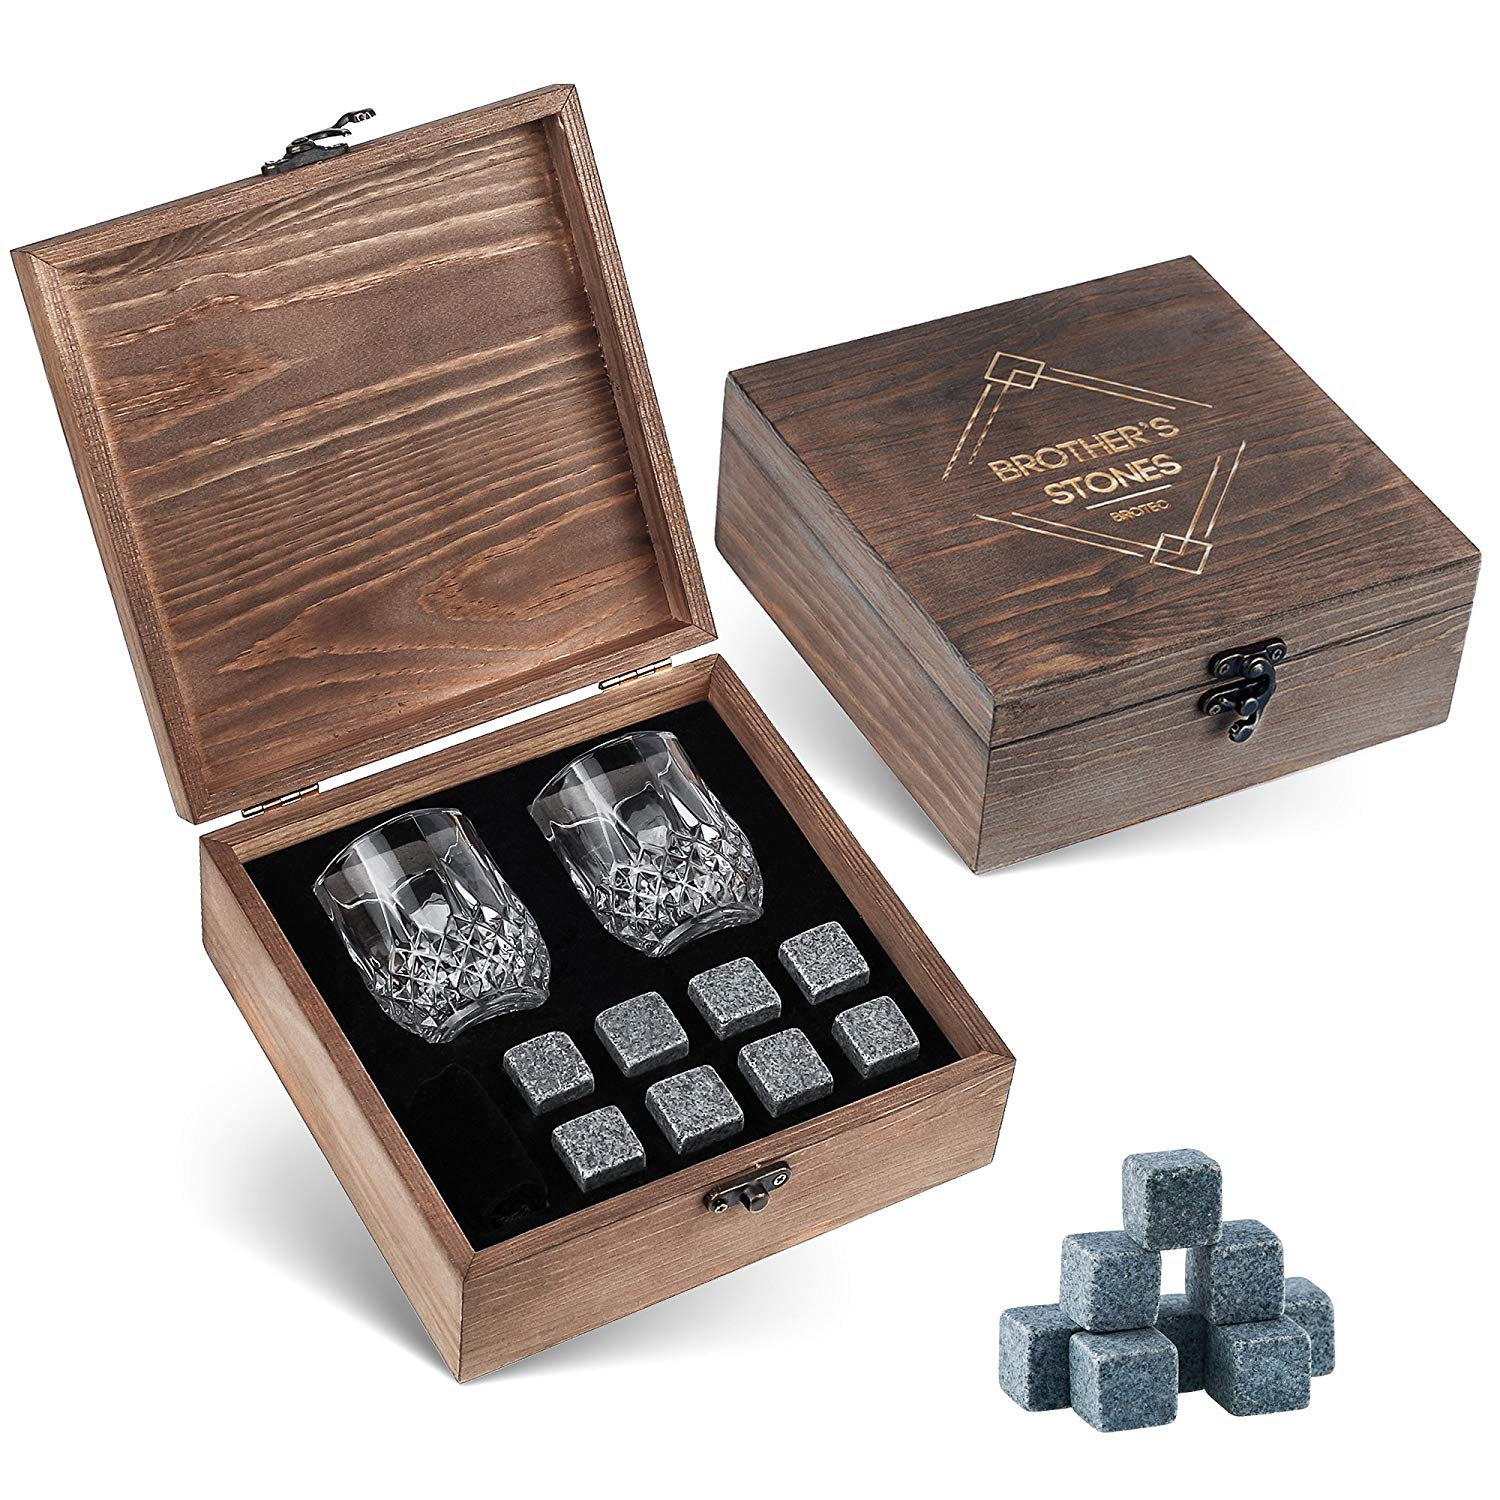 Gartendeko Aus Glas Elegant Whiskey Steine Geschenk Set – 8 Granit Chillen Whisky Rocks